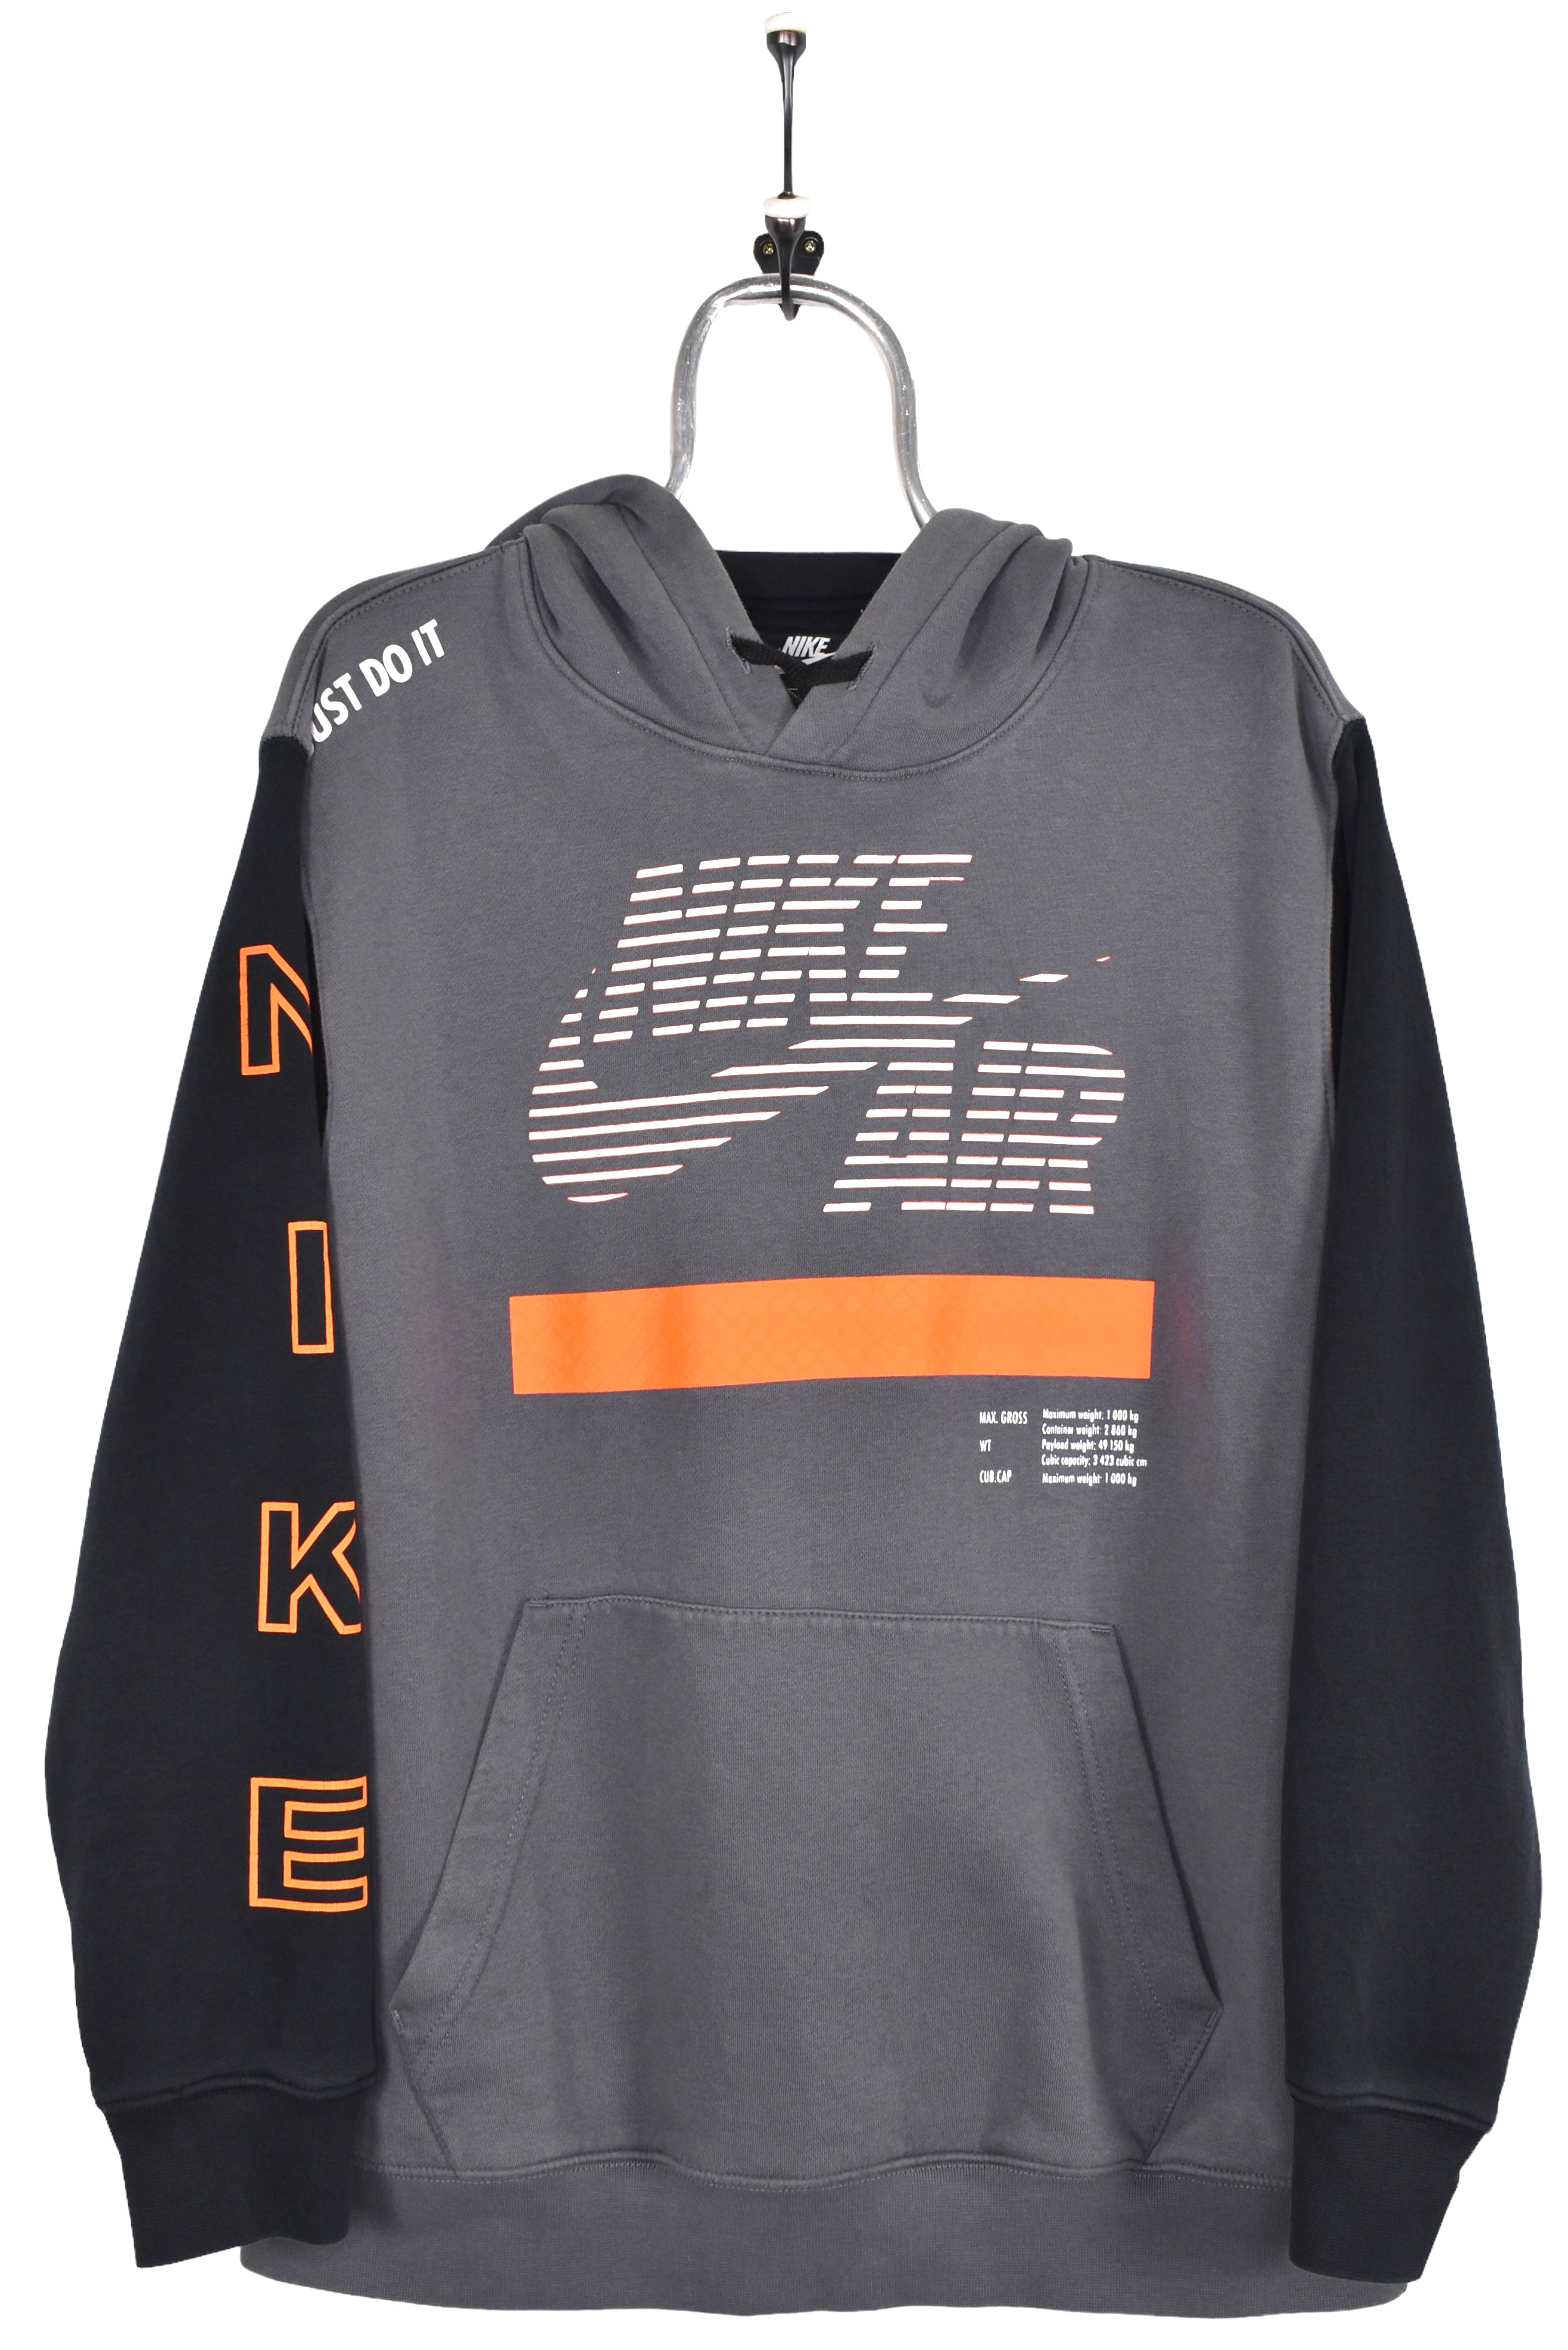 Modern Nike hoodie, grey graphic sweatshirt - Large